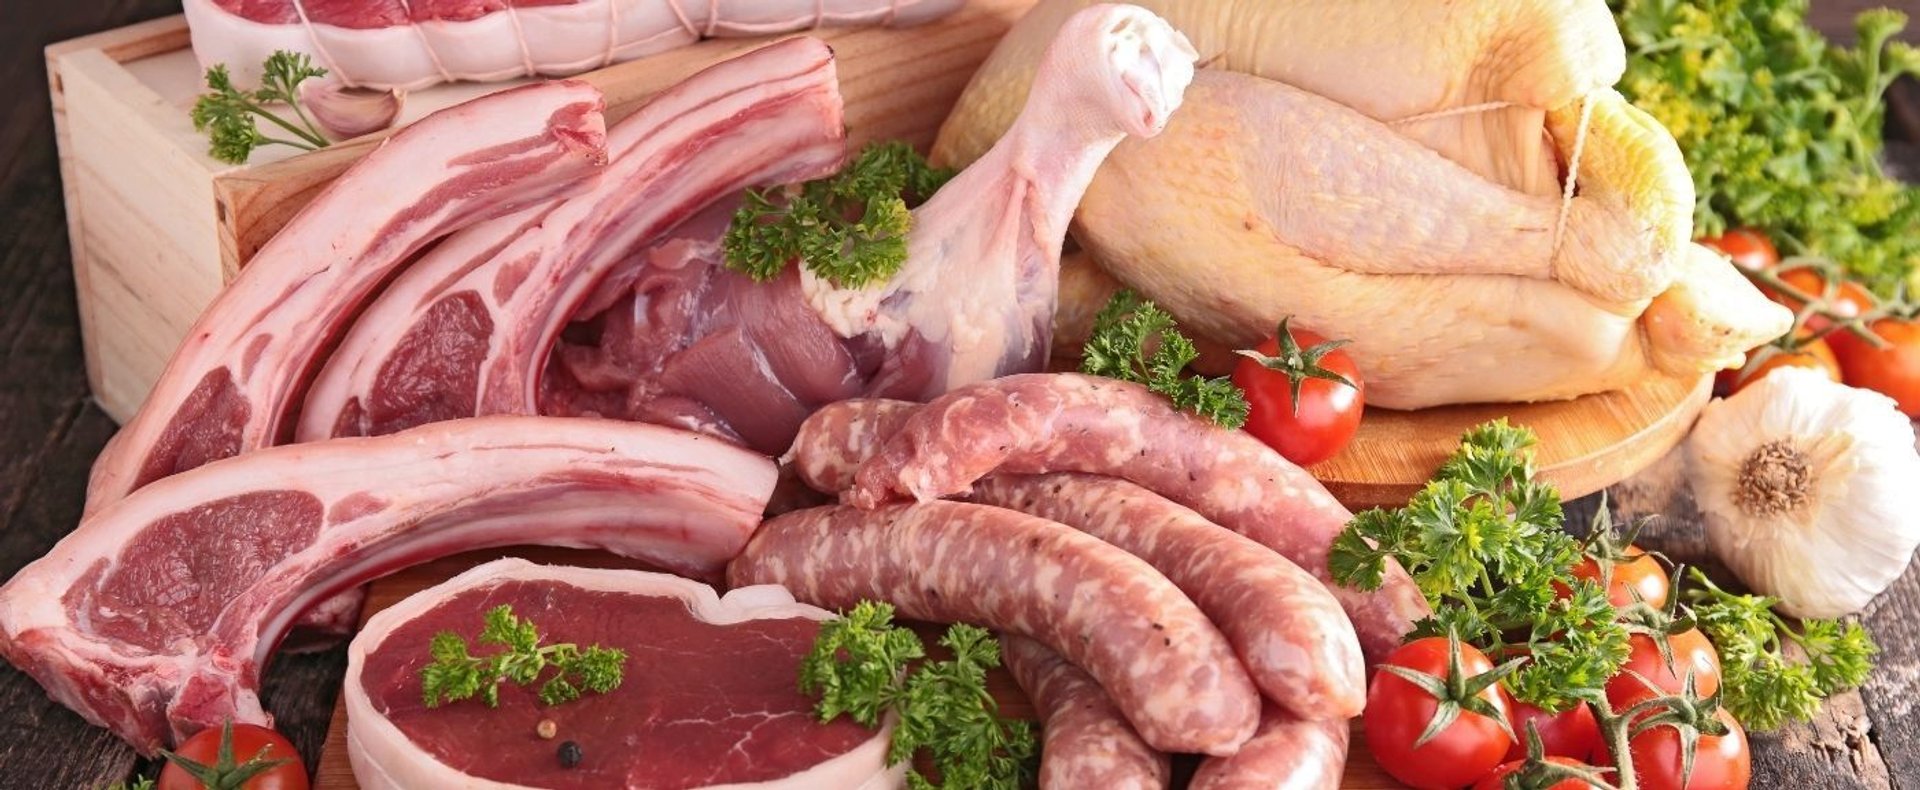 Mięso zostanie objęte podatkiem?